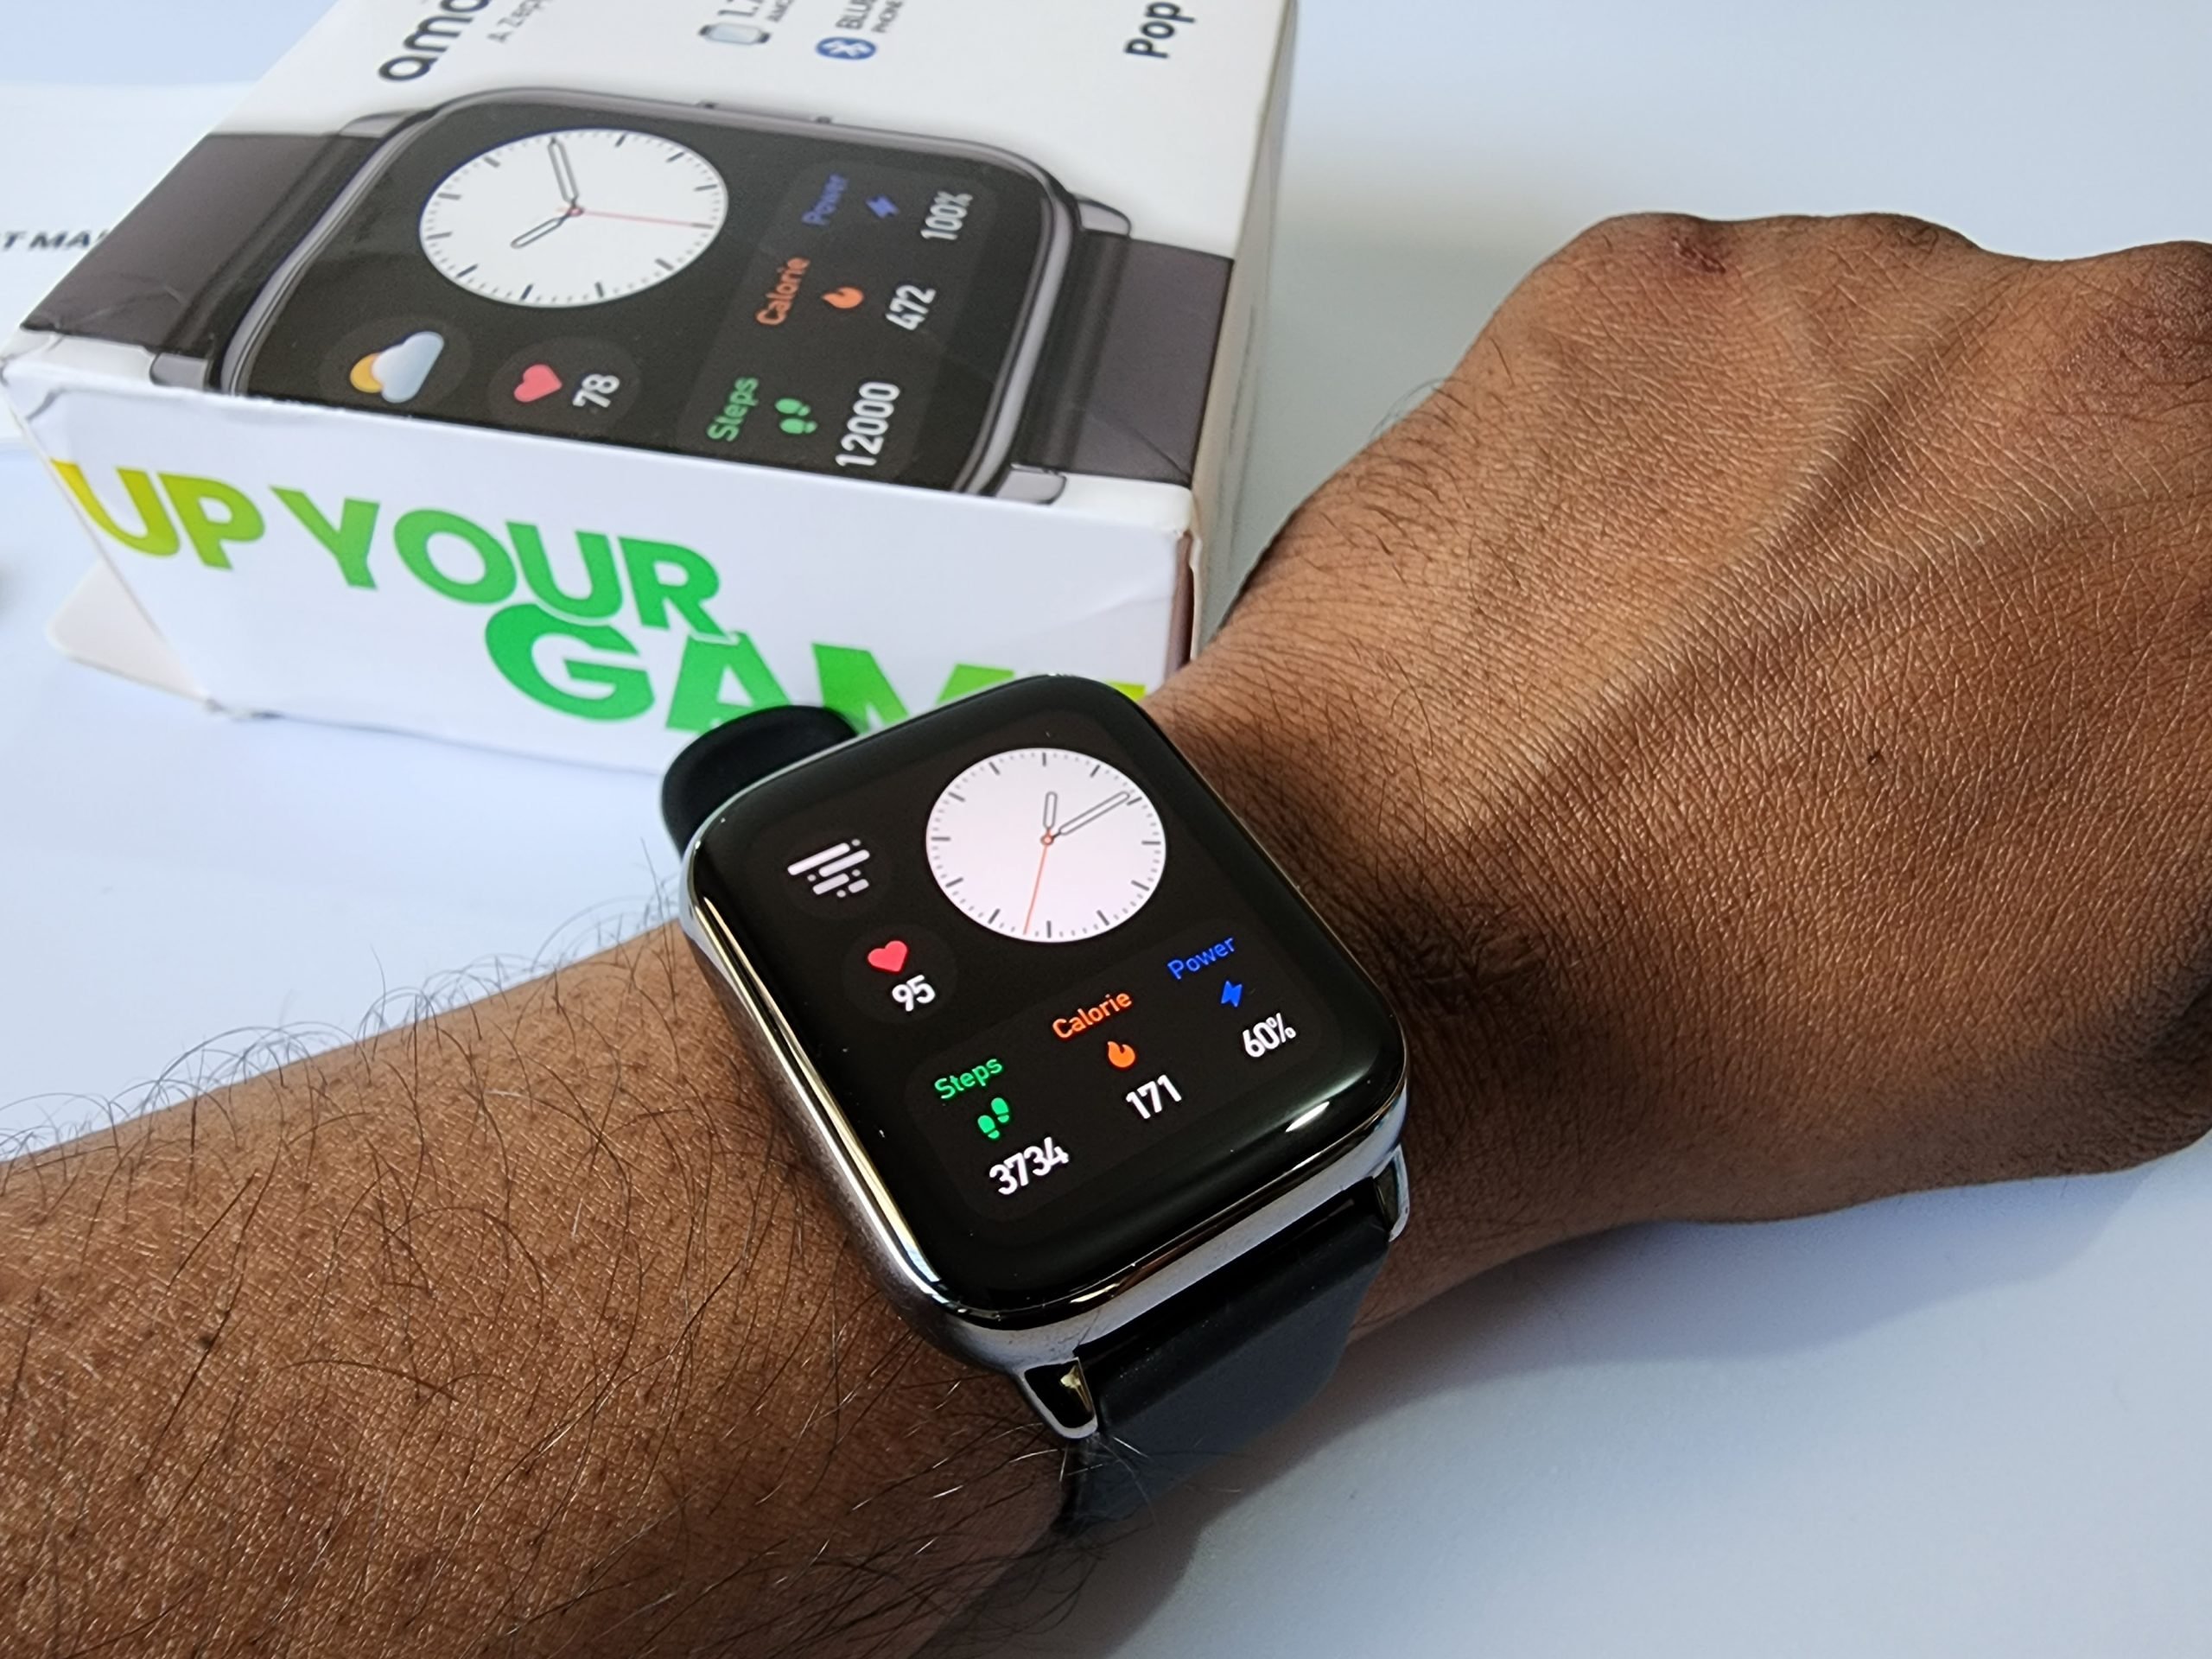 Amazfit Pop 2, display Amoled e chiamate bluetooth con il nuovo smartwatch  